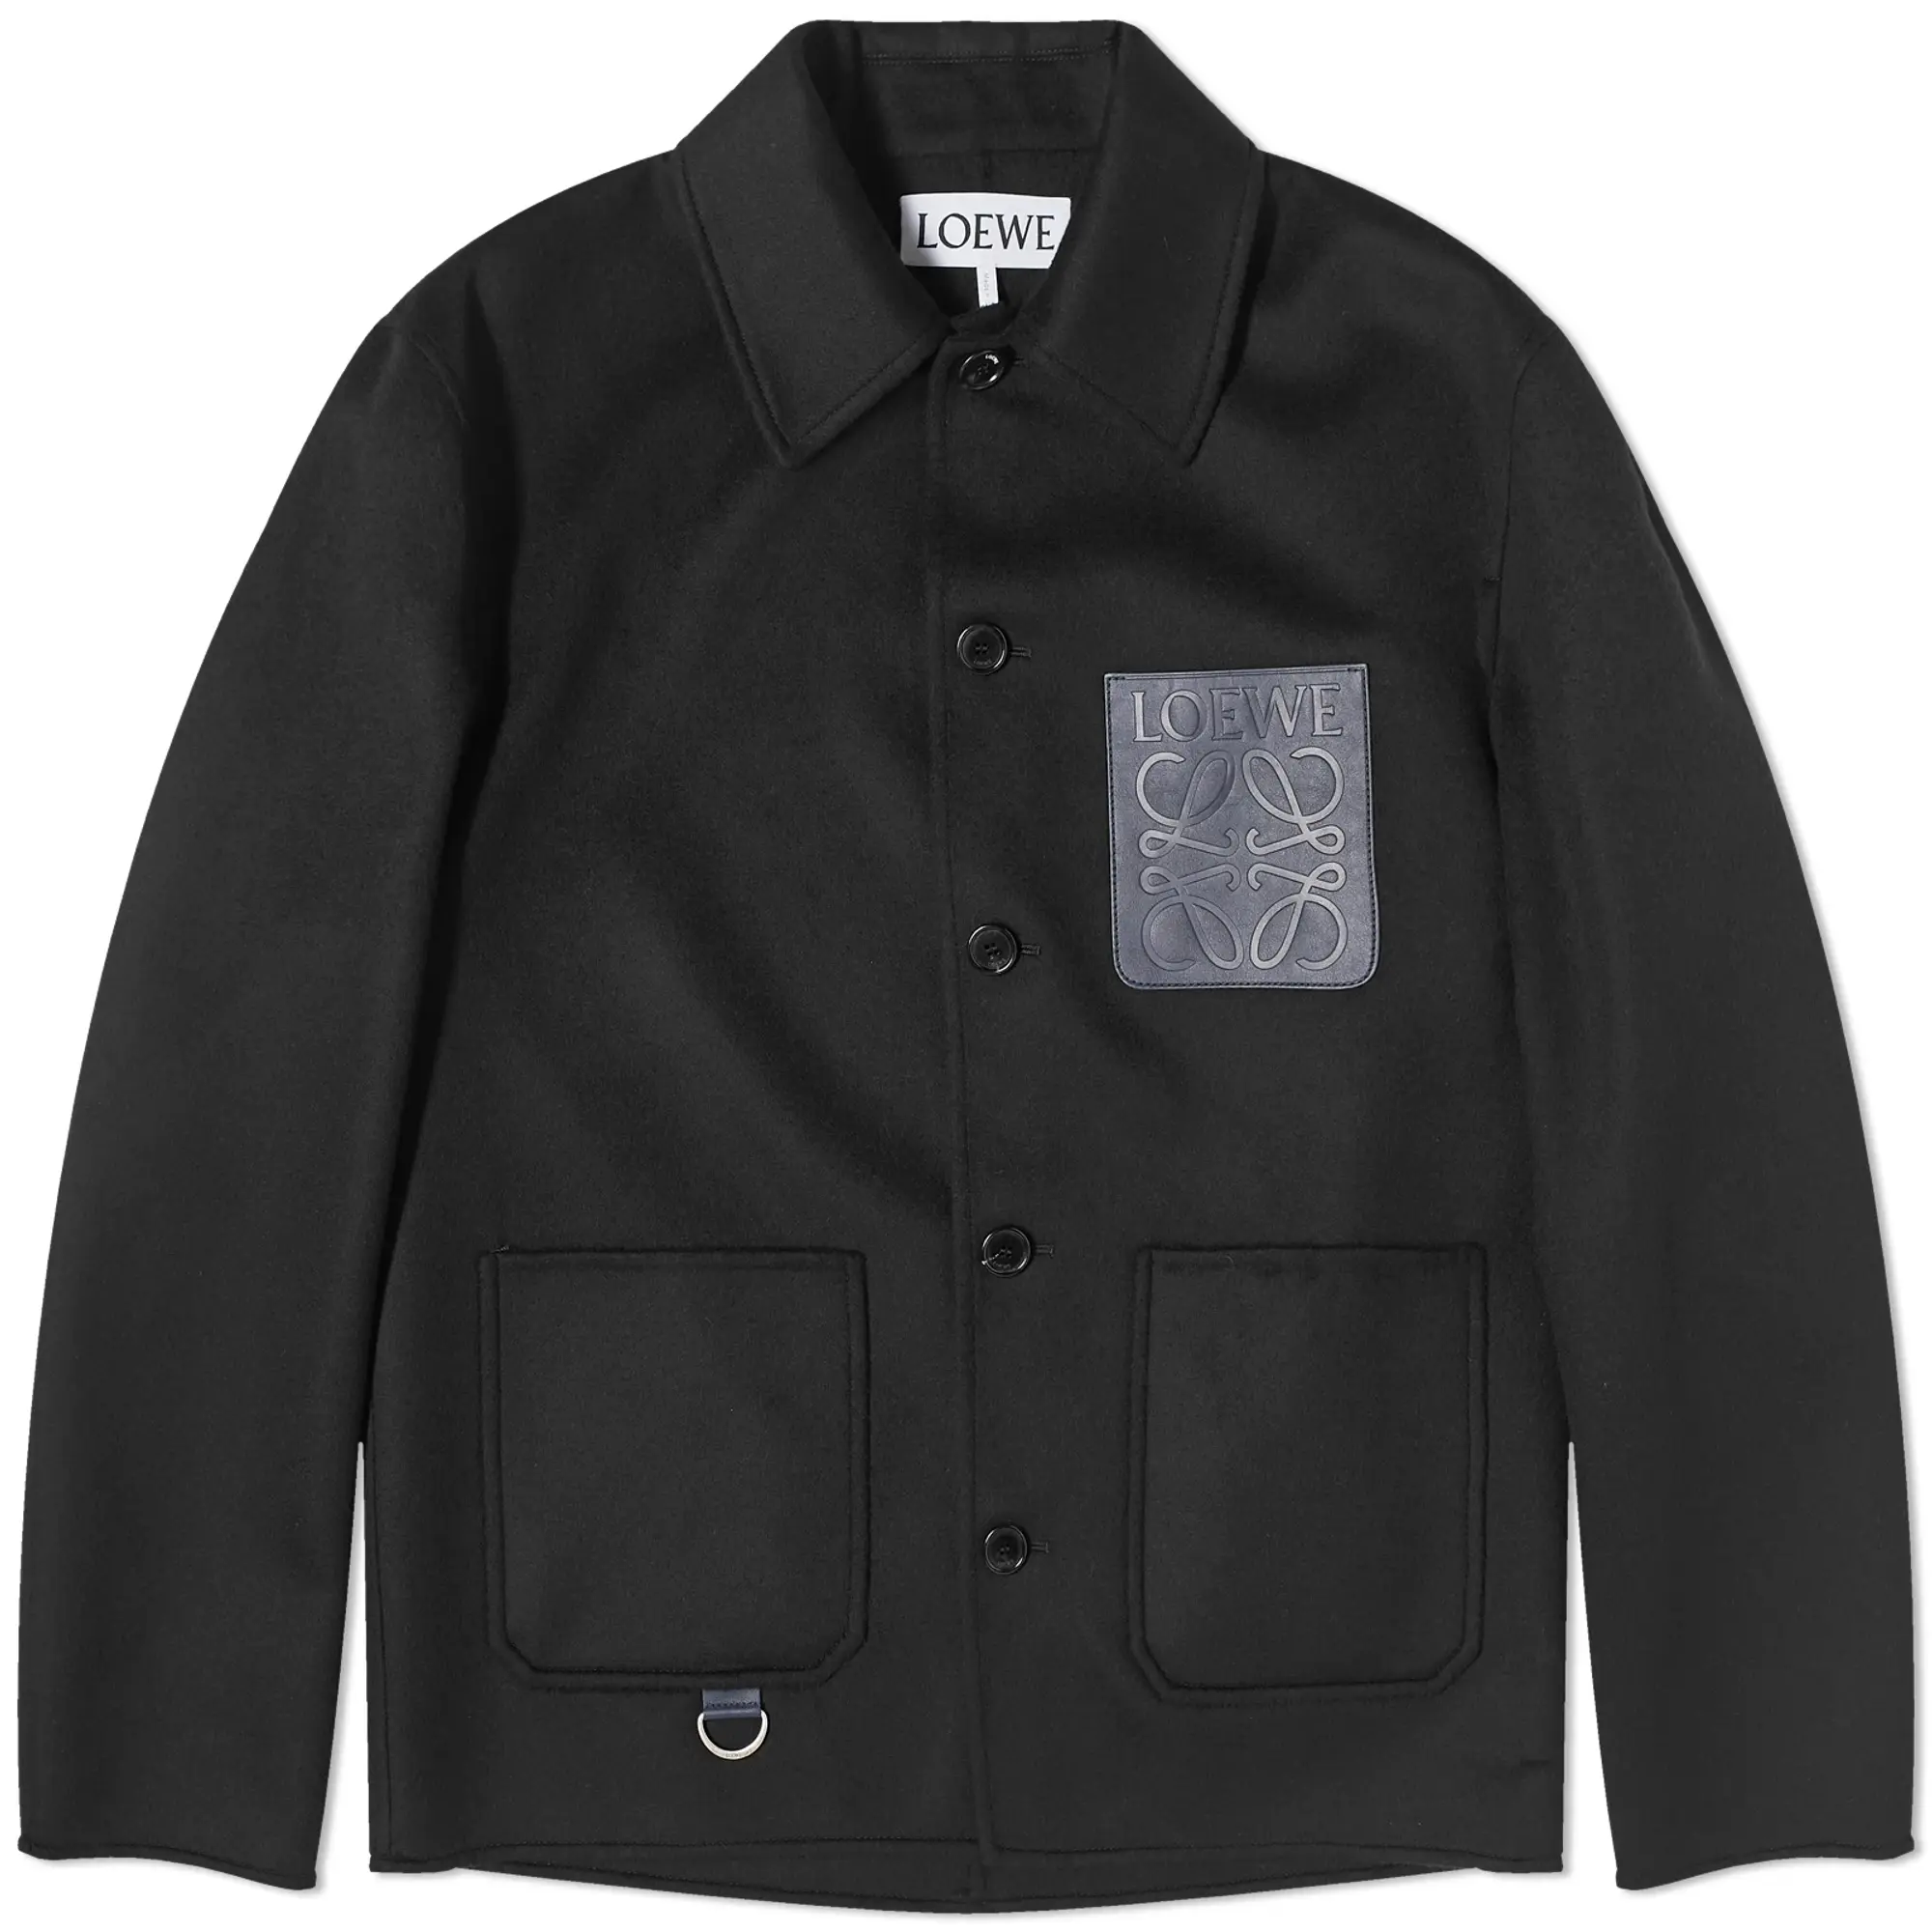 Loewe Men's Workwear Jacket Black | H526Y03W761100 | FOOTY.COM